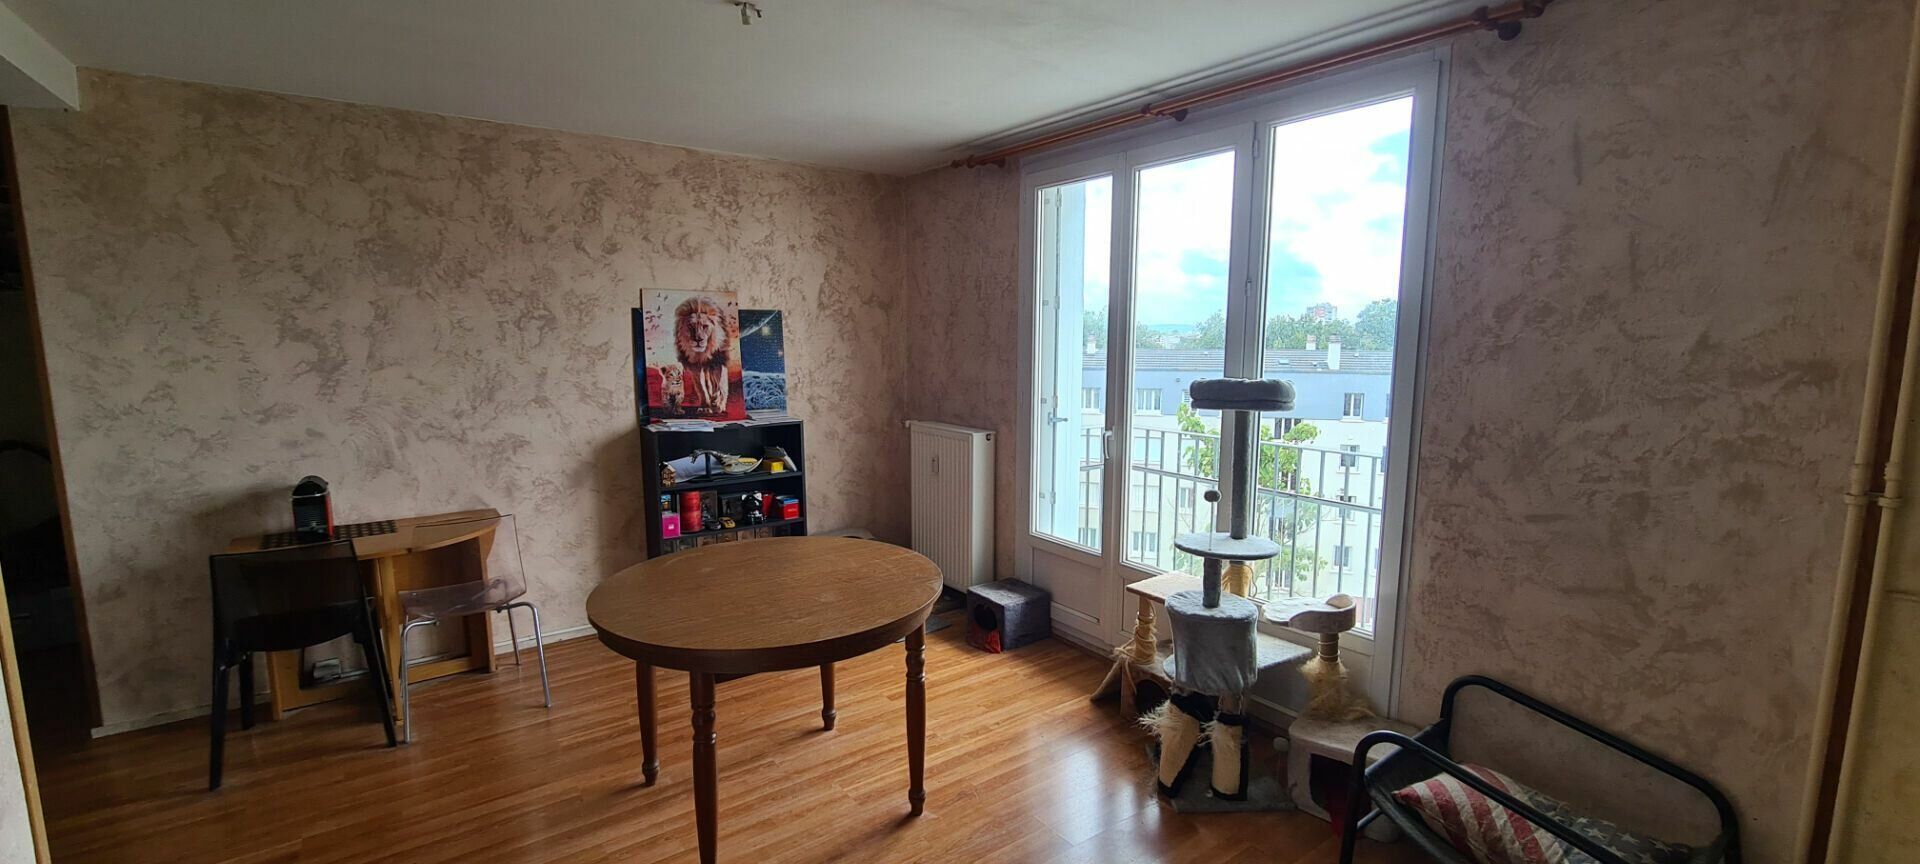 Appartement à vendre 3 65.7m2 à Limoges vignette-4